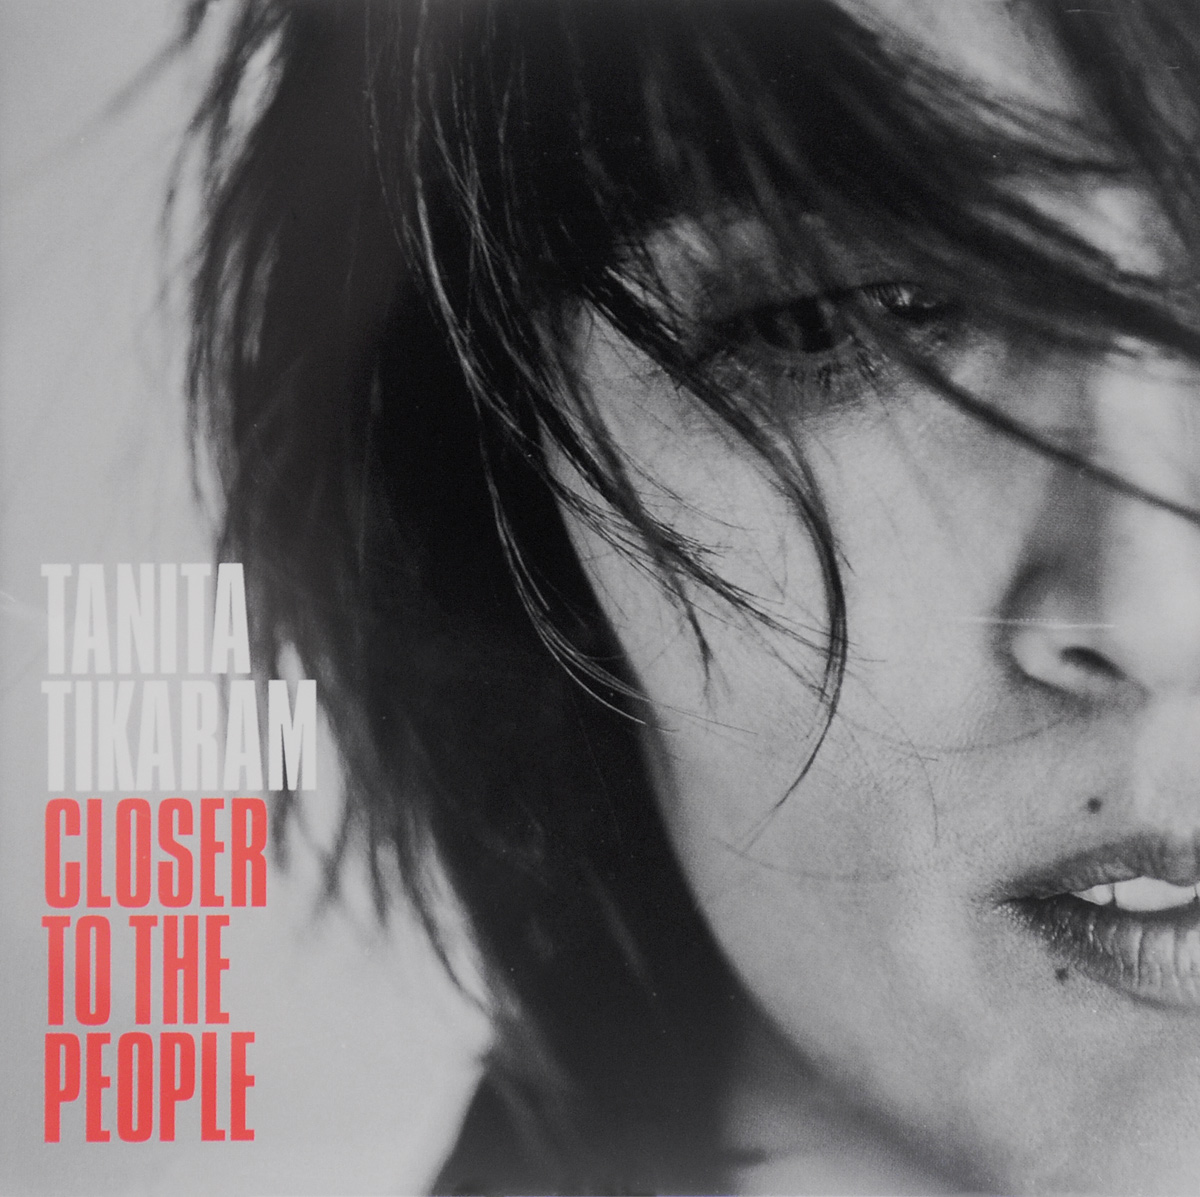 Tanita Tikaram. Closer To The People